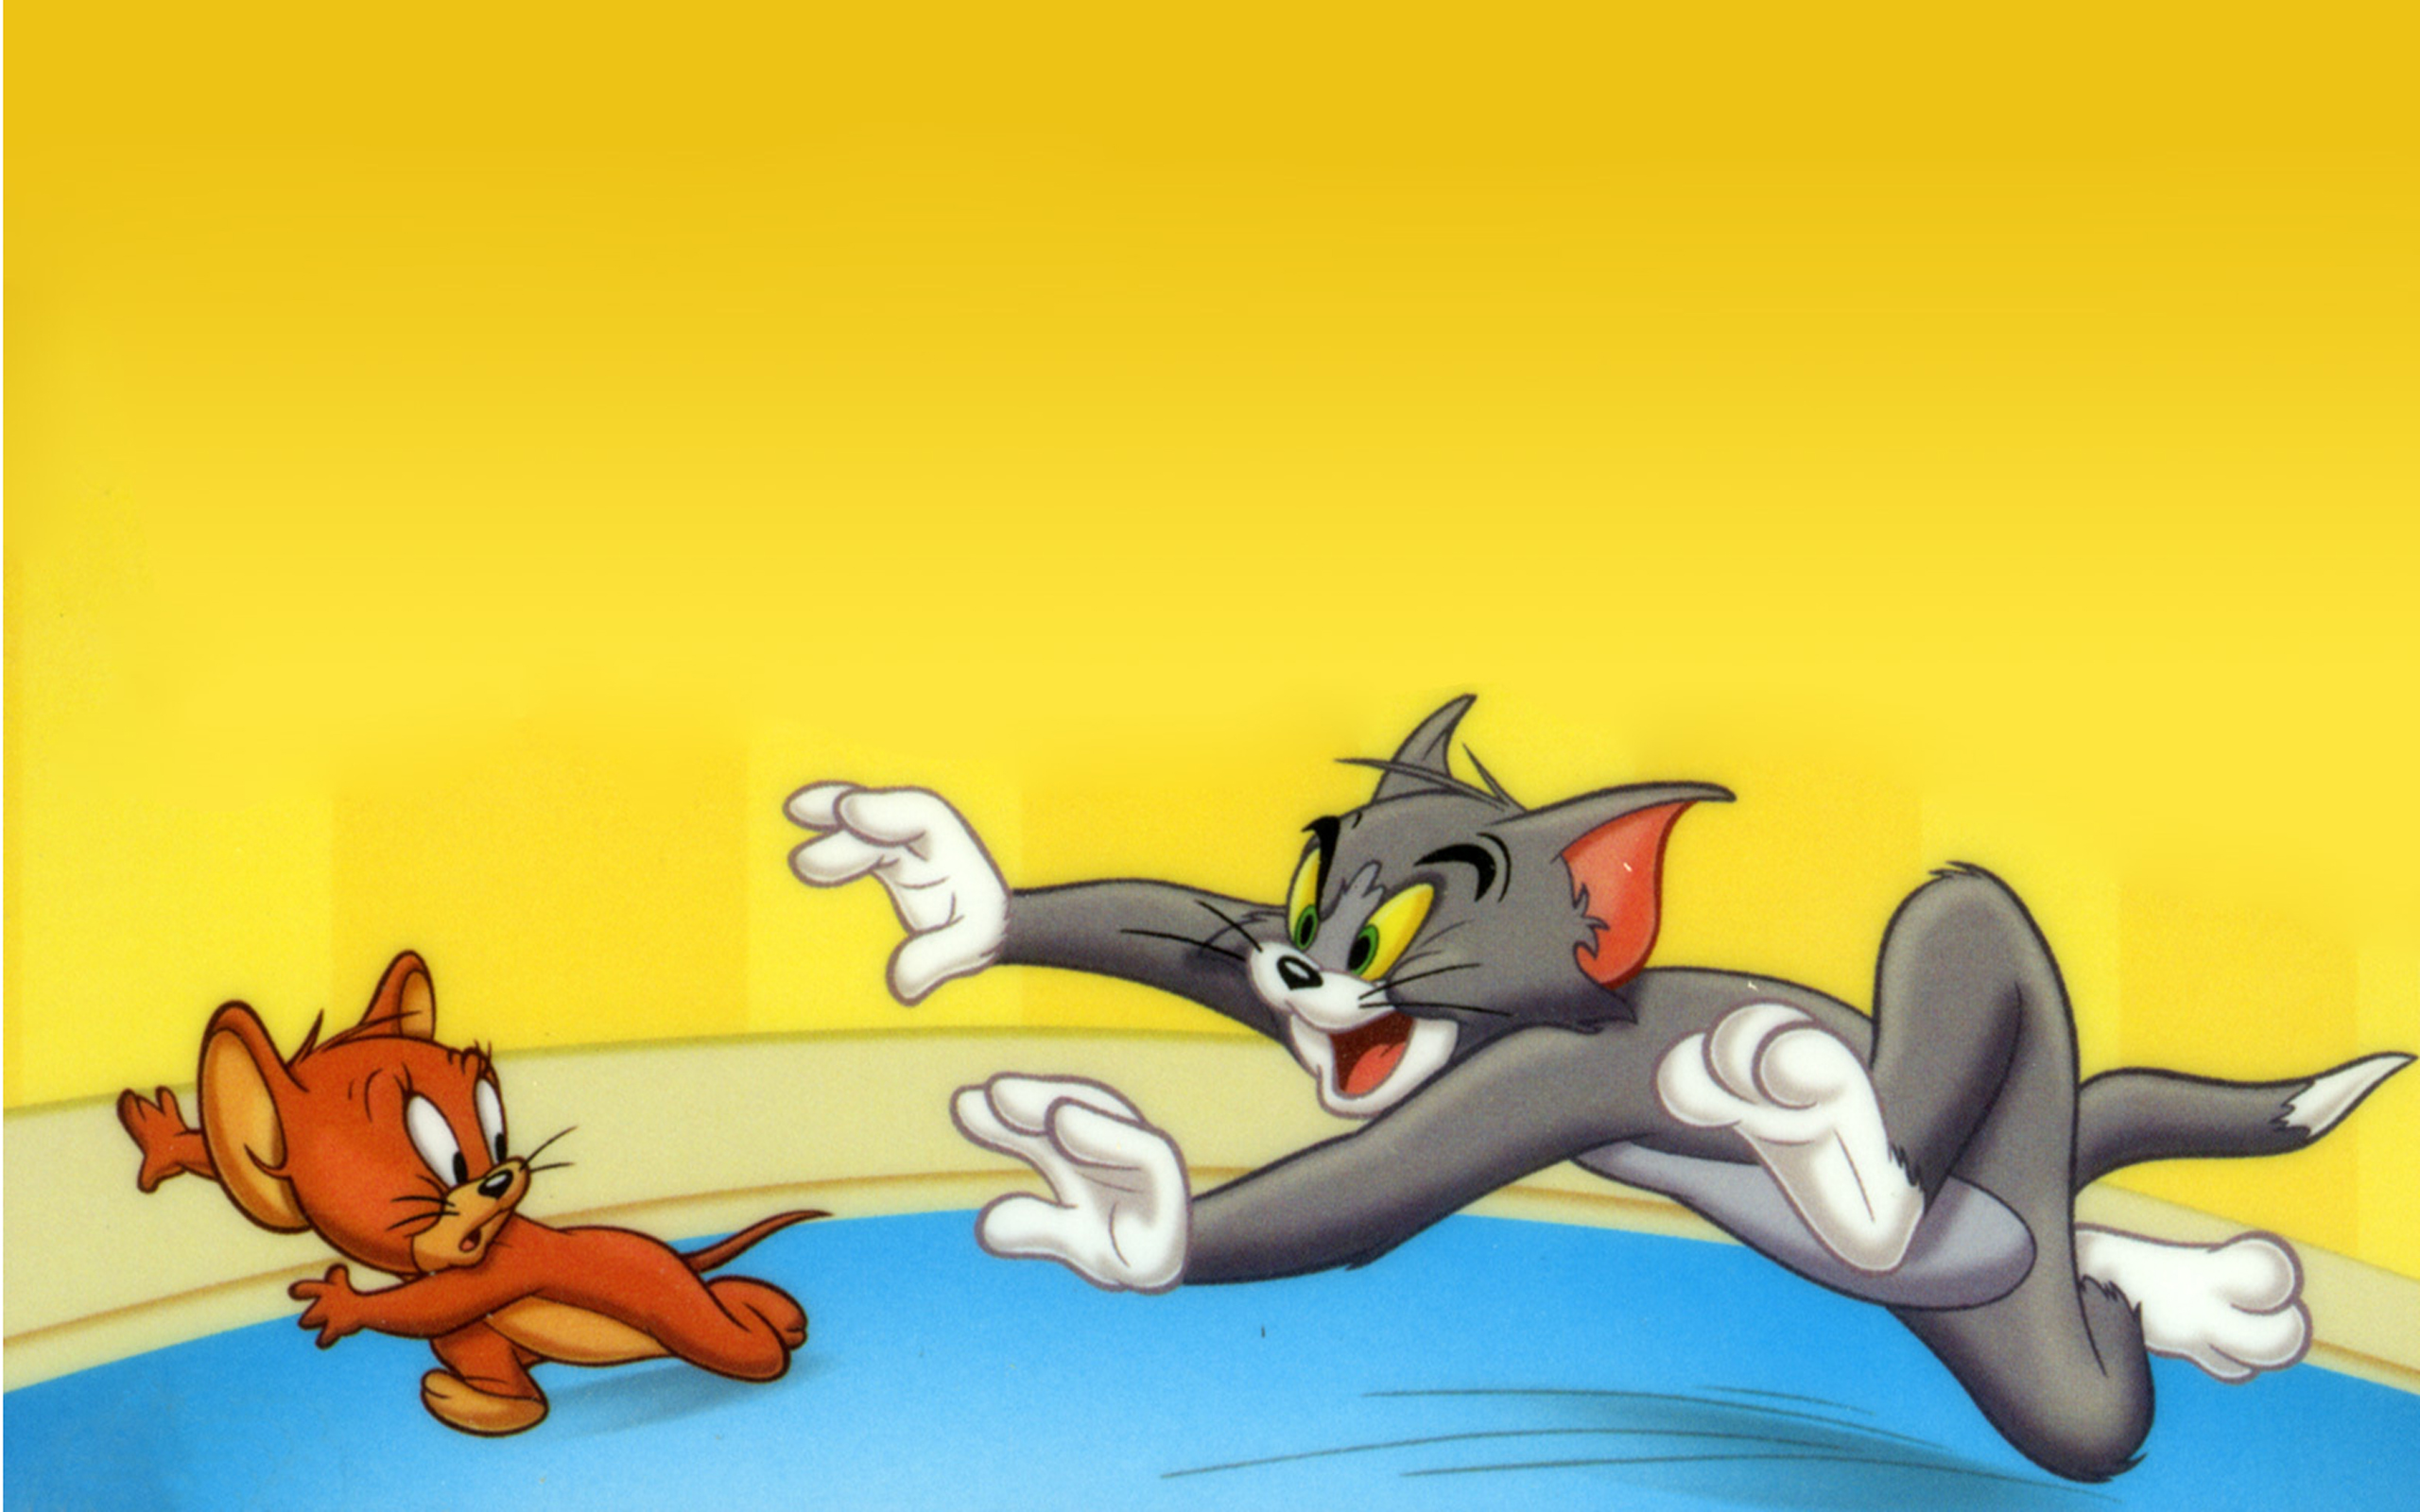 Tom funny. Tom and Jerry. Tom and Jerry Tom. Tom and Jerry 1975. The Tom and Jerry show 1975.